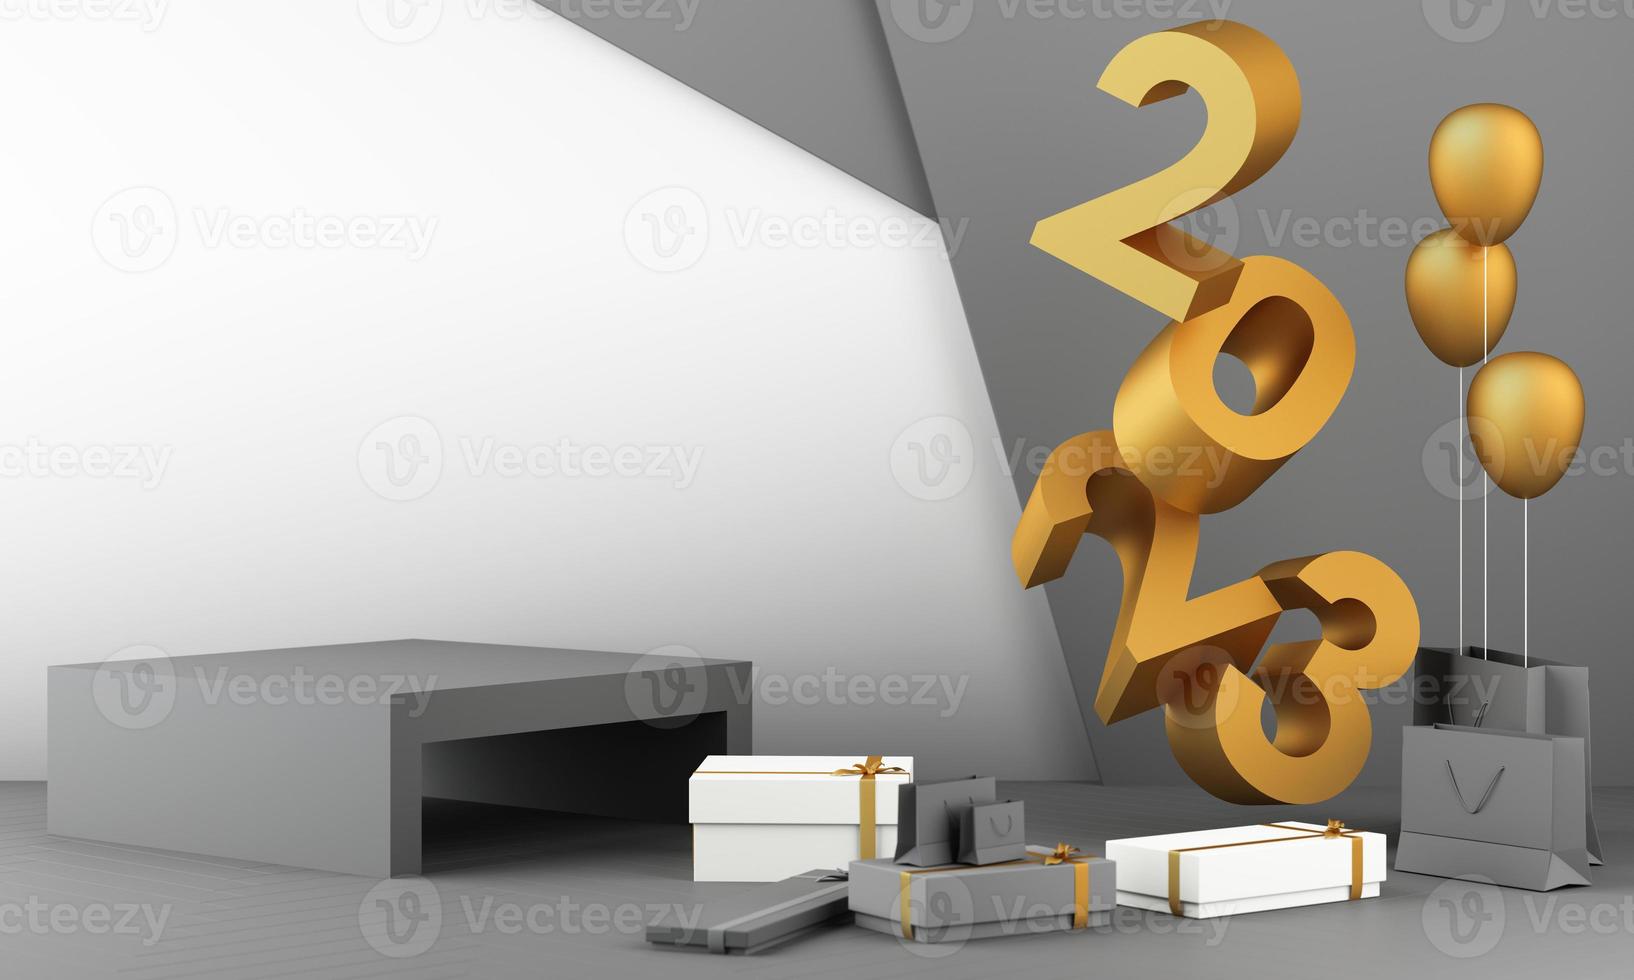 letras textura de ouro de 2023 no conceito de ano novo, tons de cor de mármore branco, cercados por formas geométricas para exibir os produtos e caixas de presente com bolas transparentes. renderização 3d foto